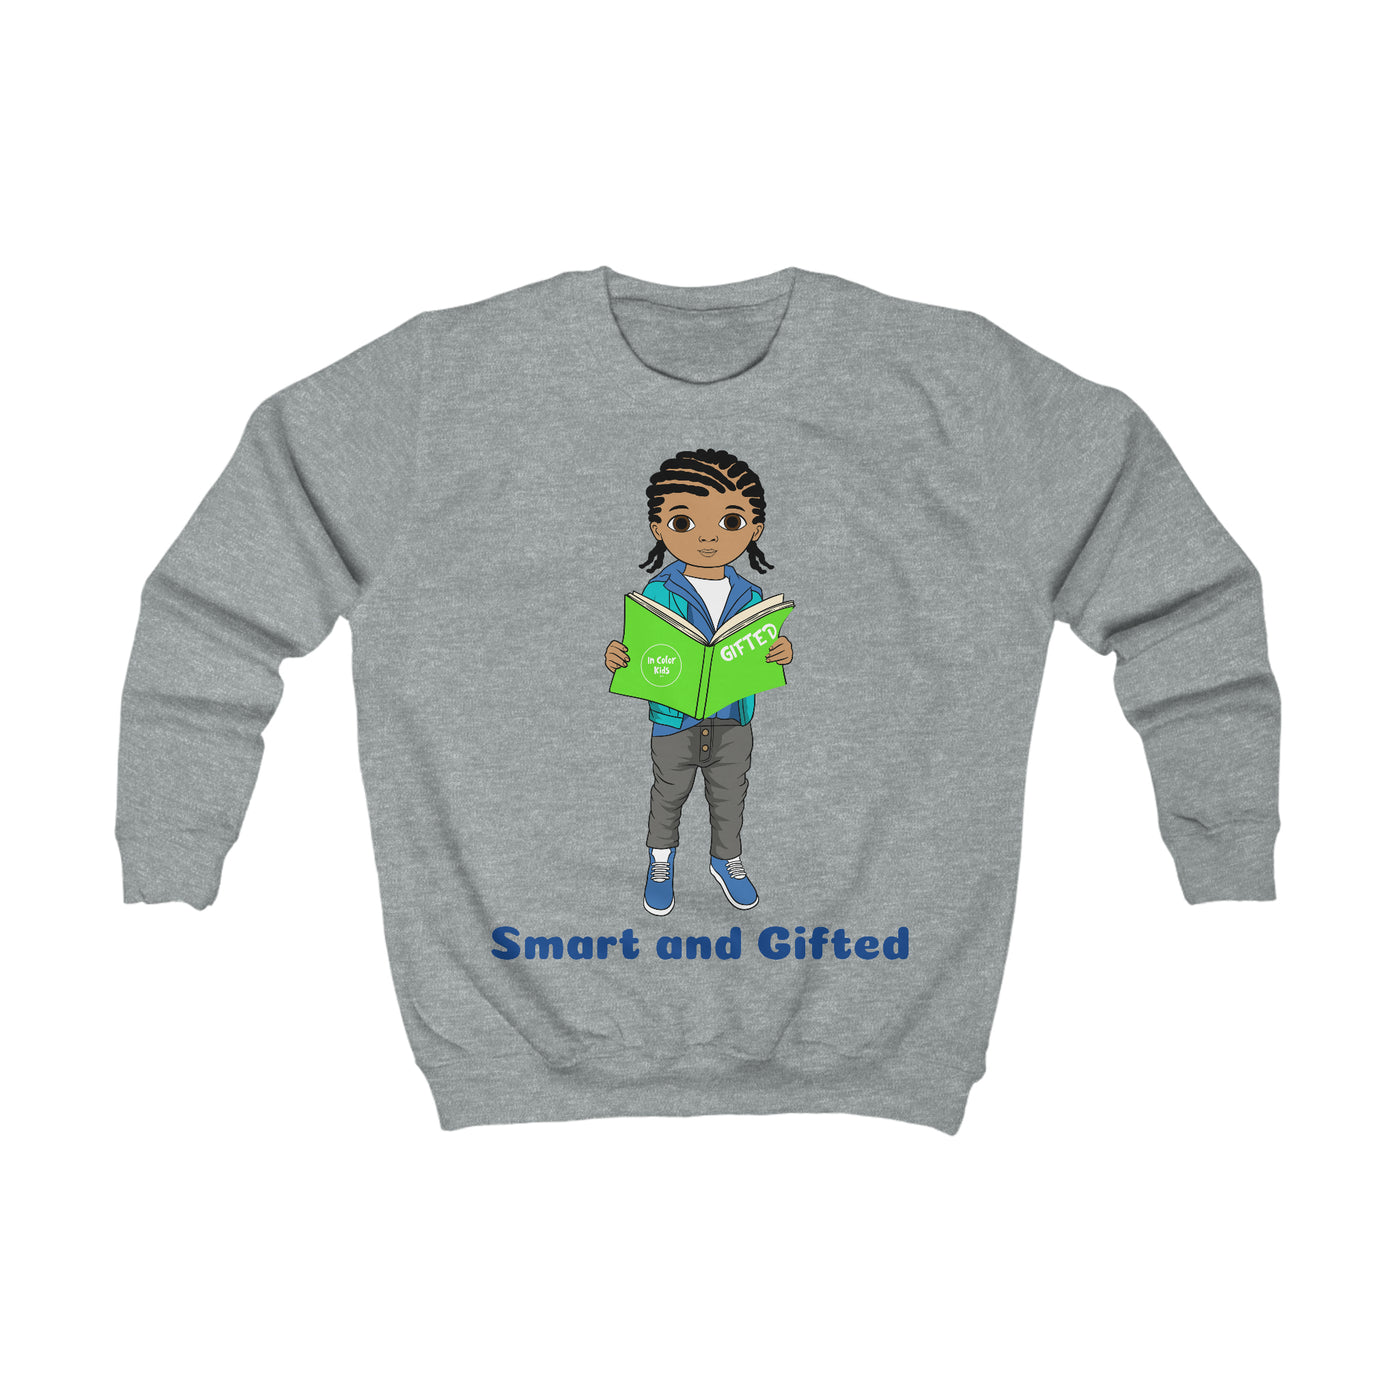 Smart and Gifted Sweatshirt - Mocha